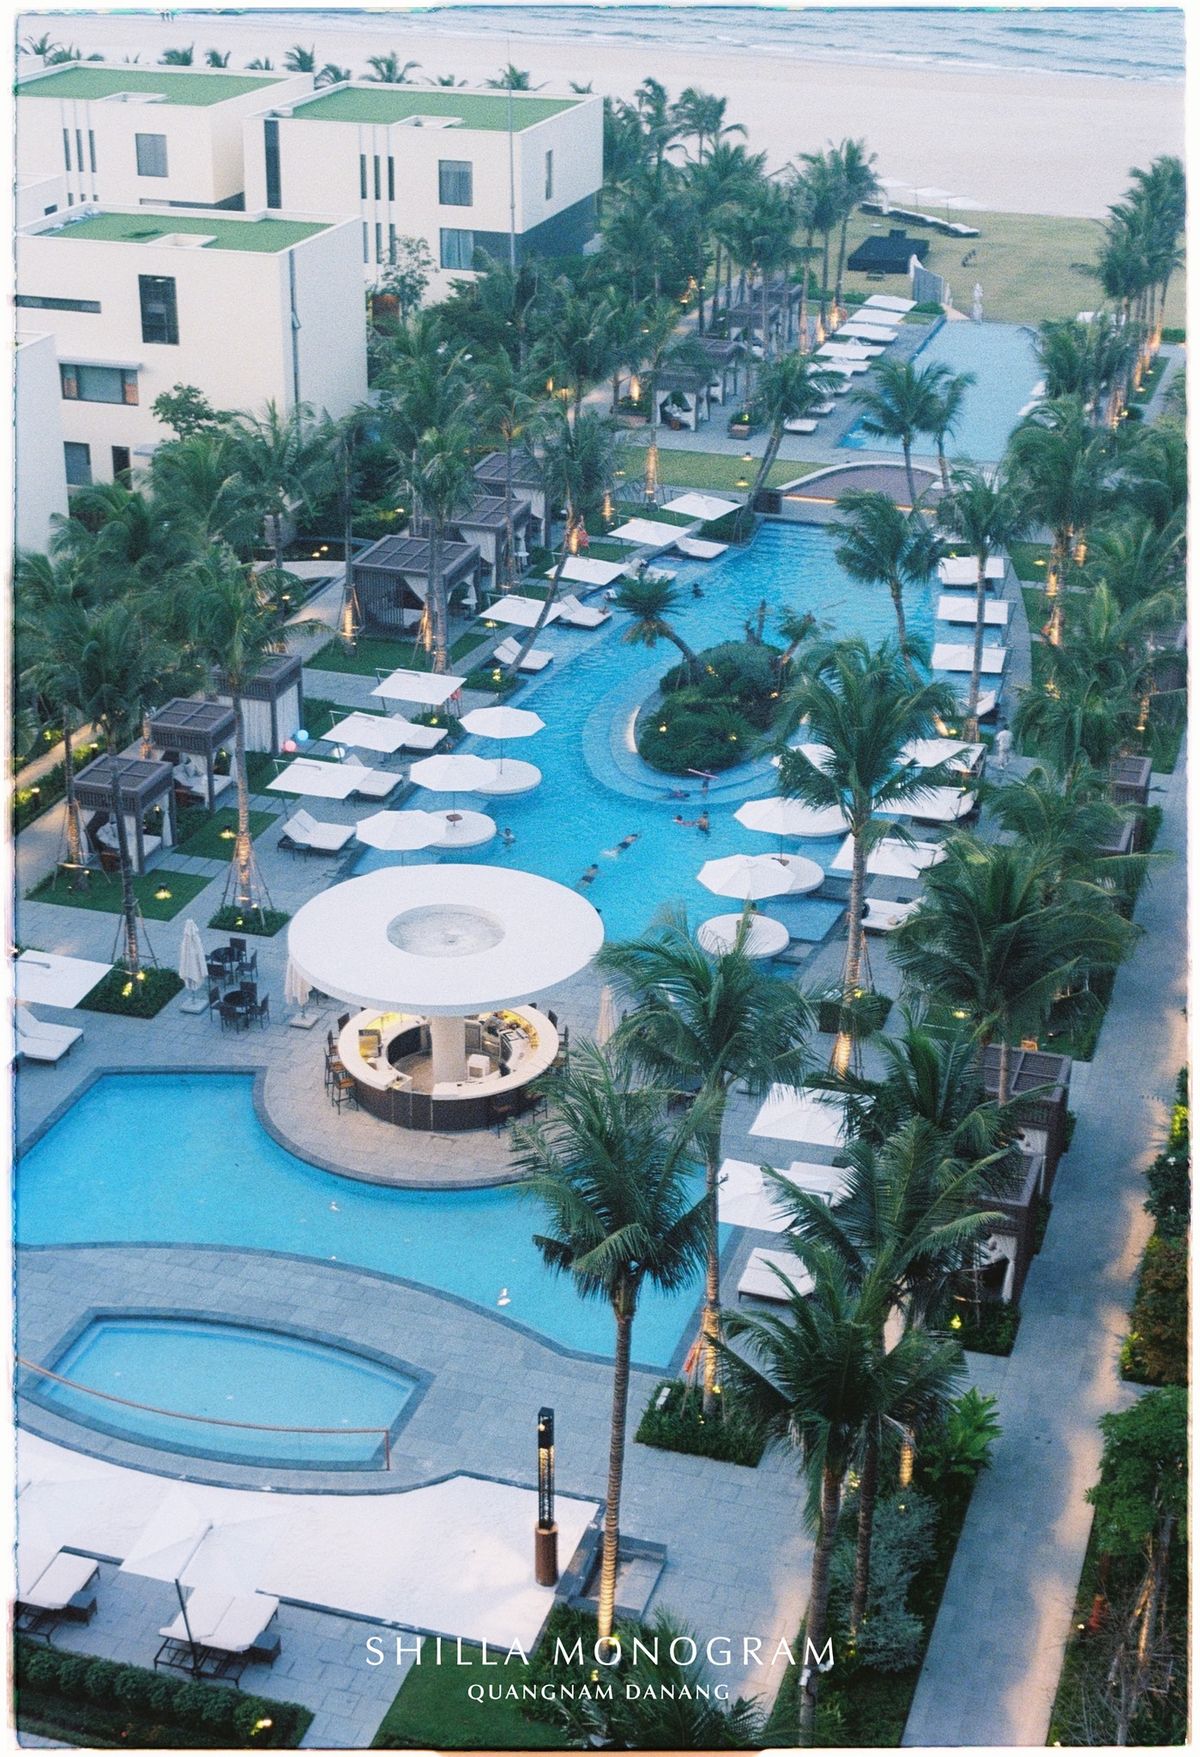 Shilla Monogram Quangnam Danang - khách sạn 5 sao có hồ bơi vô cực đẹp xuất sắc 21